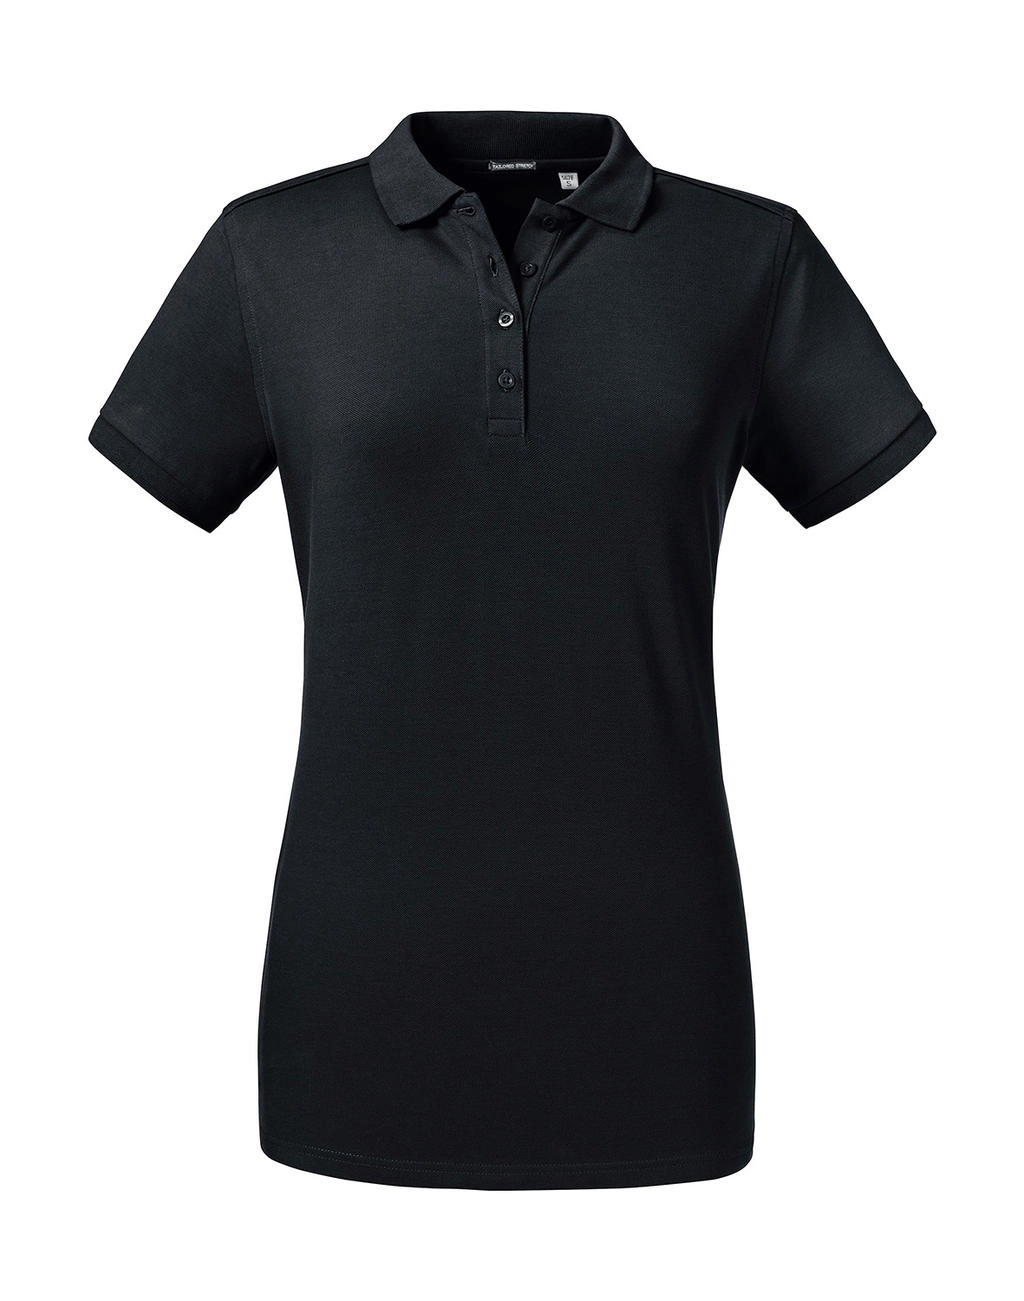 Ladies` Tailored Stretch Polo zum Besticken und Bedrucken in der Farbe Black mit Ihren Logo, Schriftzug oder Motiv.